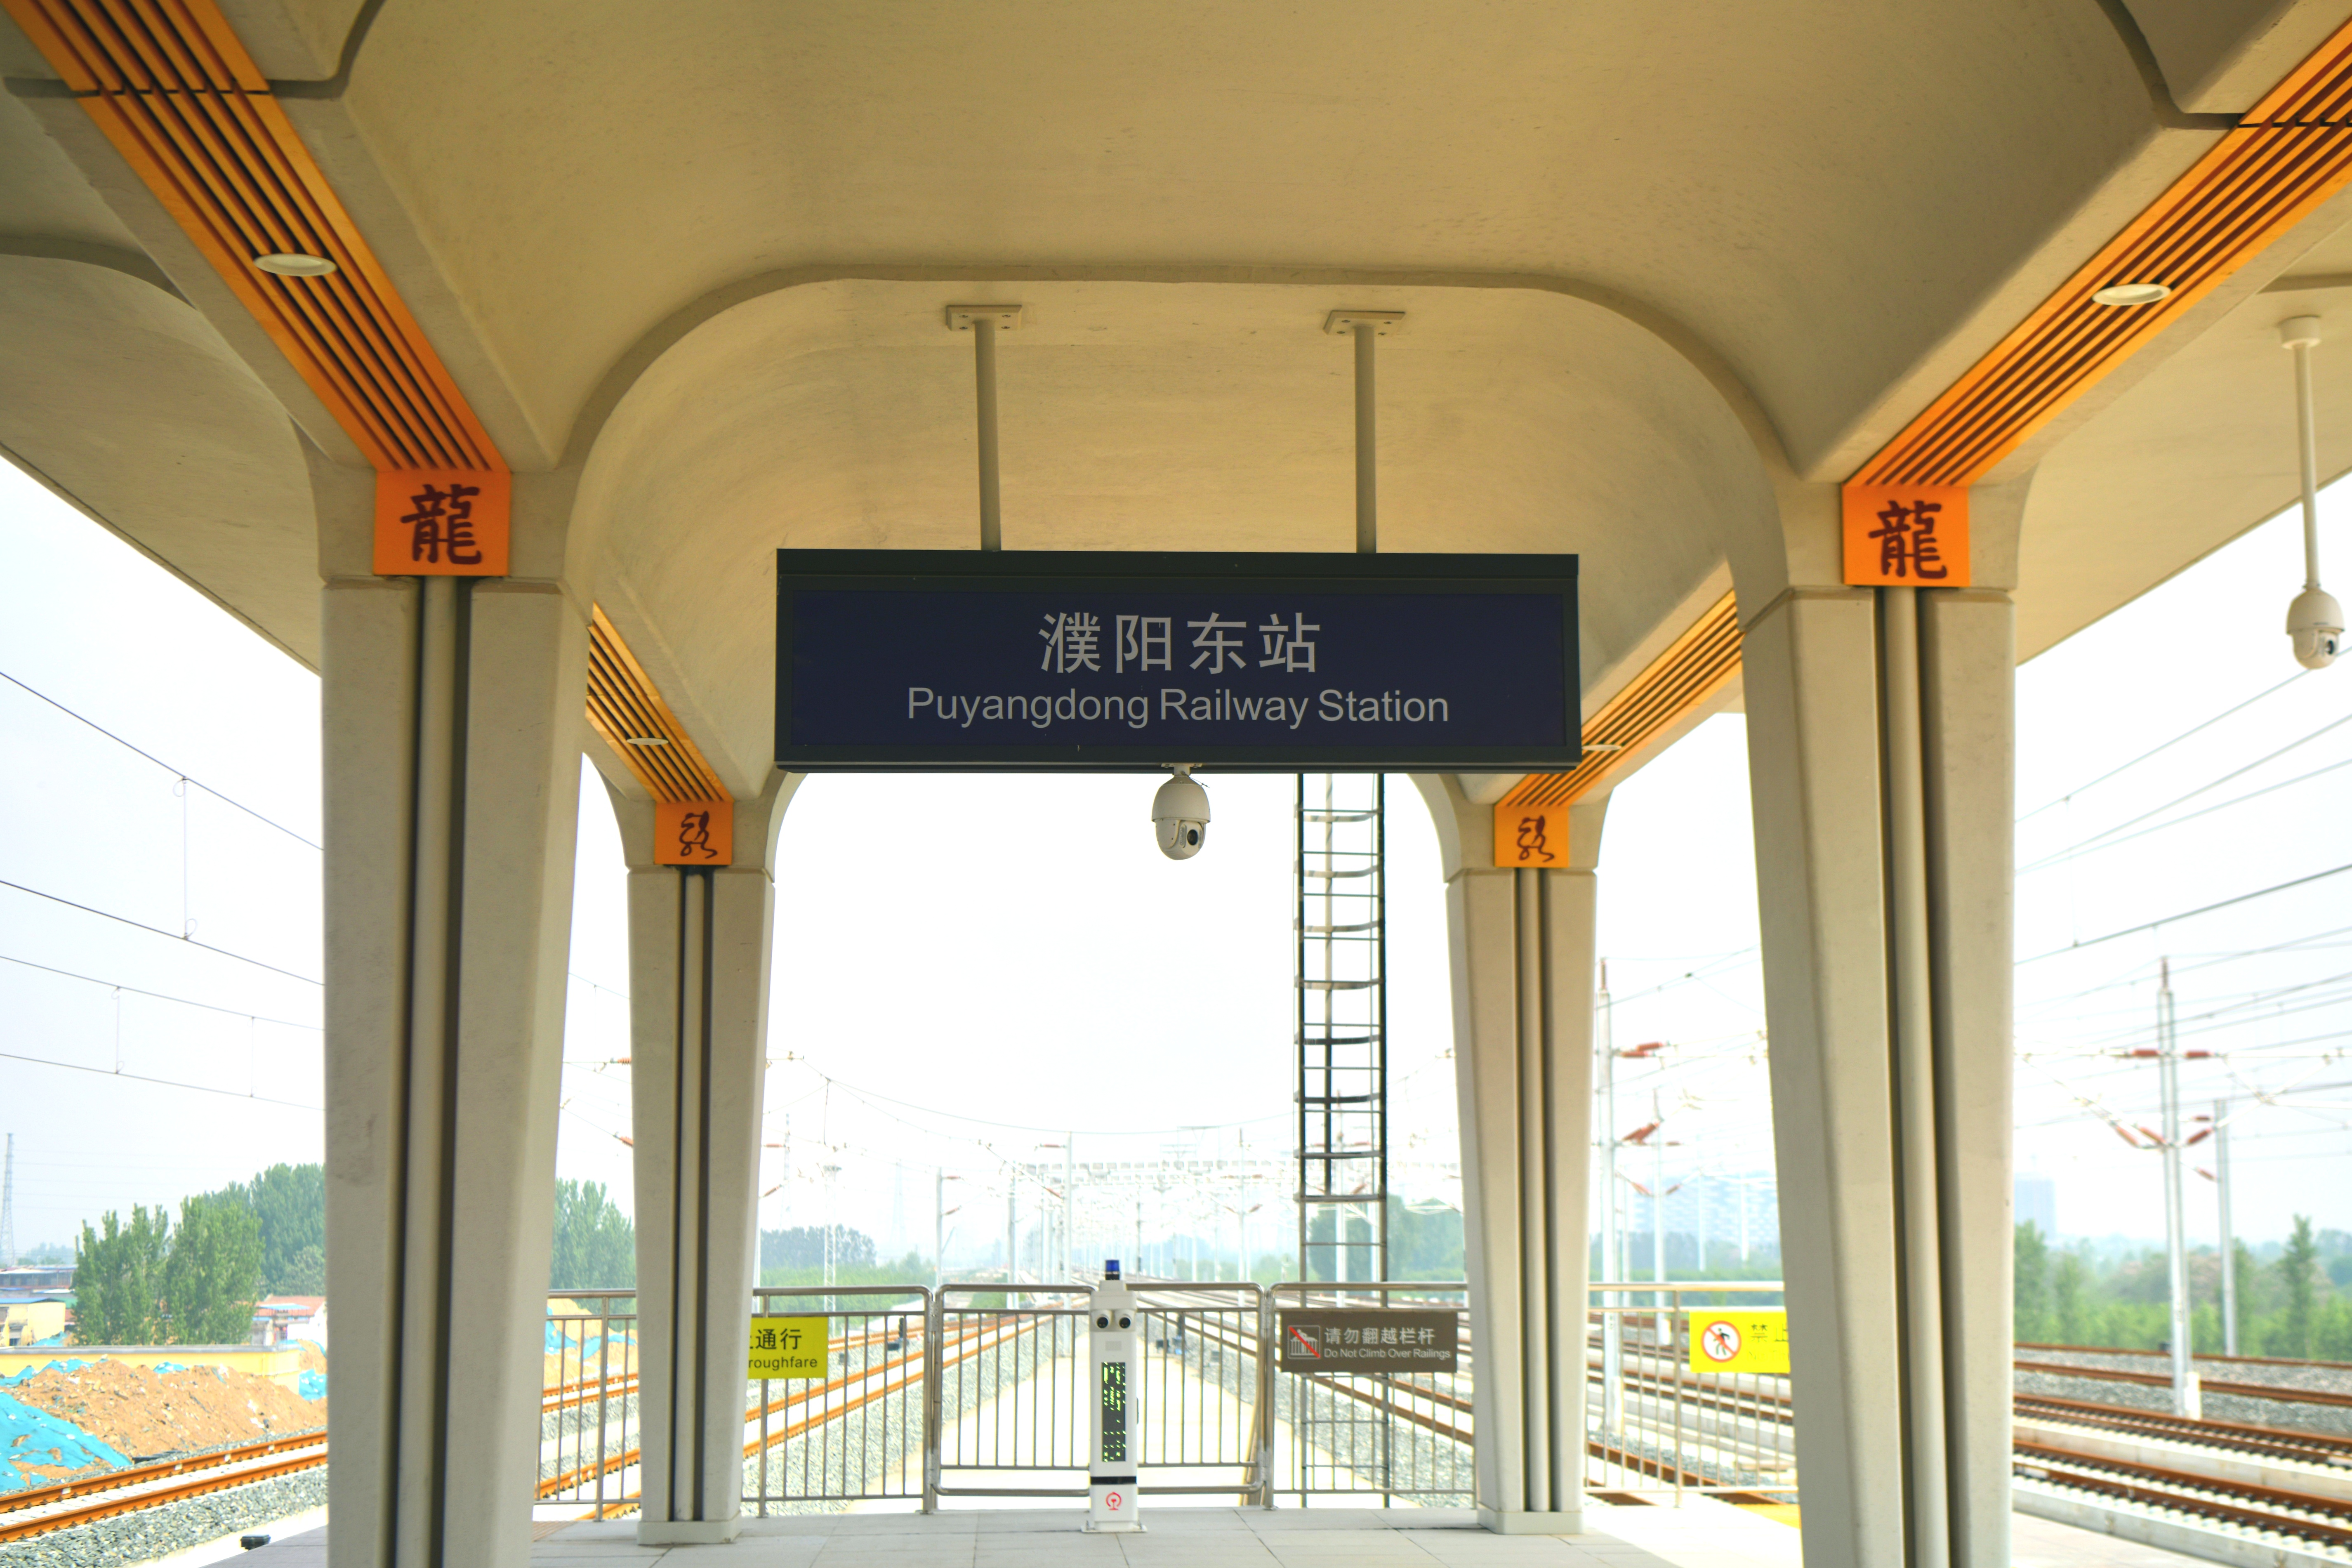 郑渝高铁路襄阳至万州段、济郑高铁路濮阳至郑州段6月20日开通运营